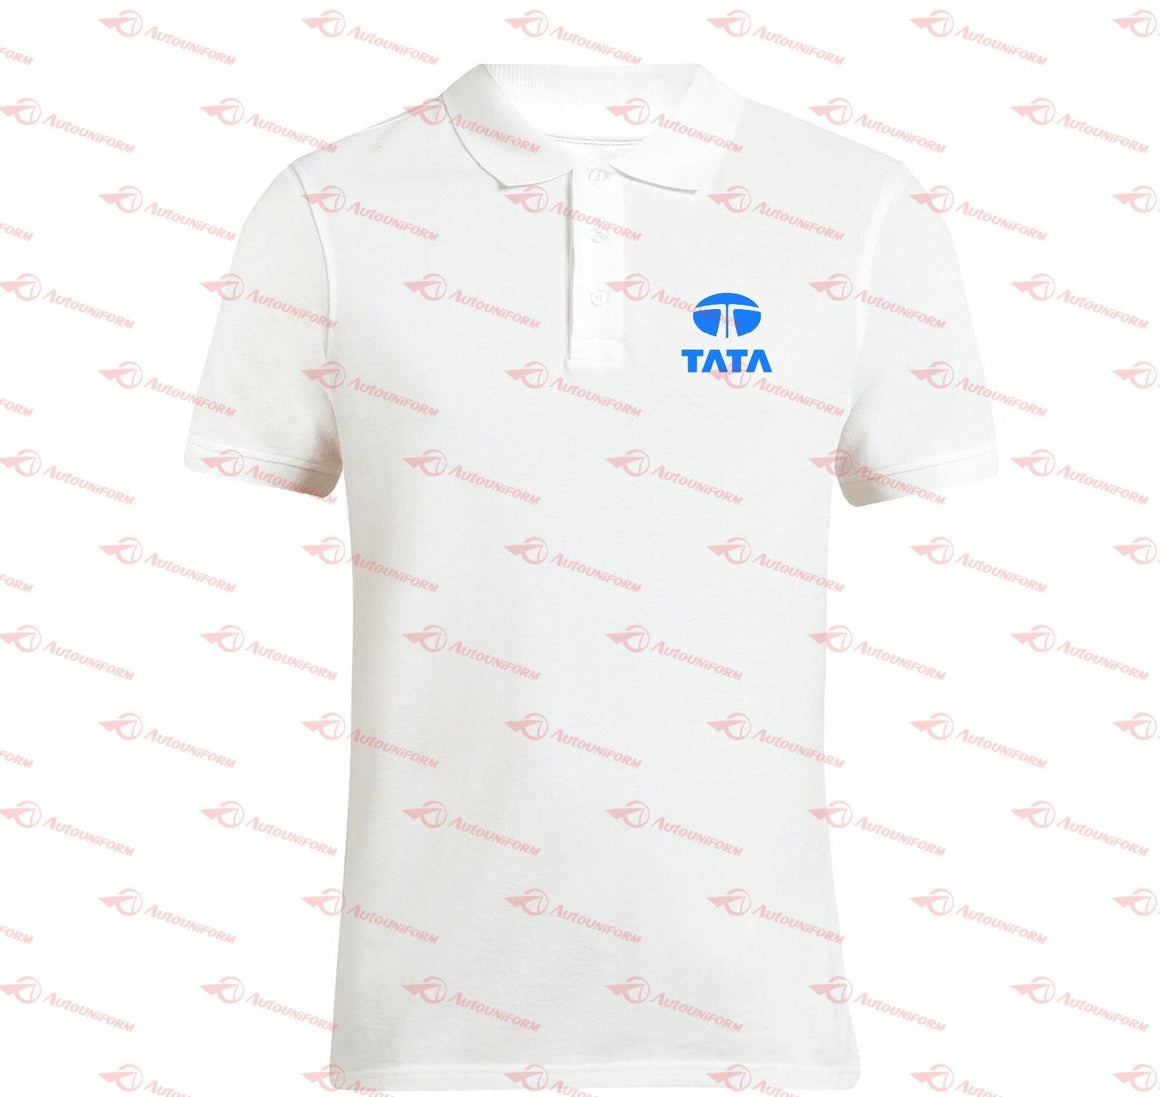 TATA Motors Uniforms – Autouniform.com